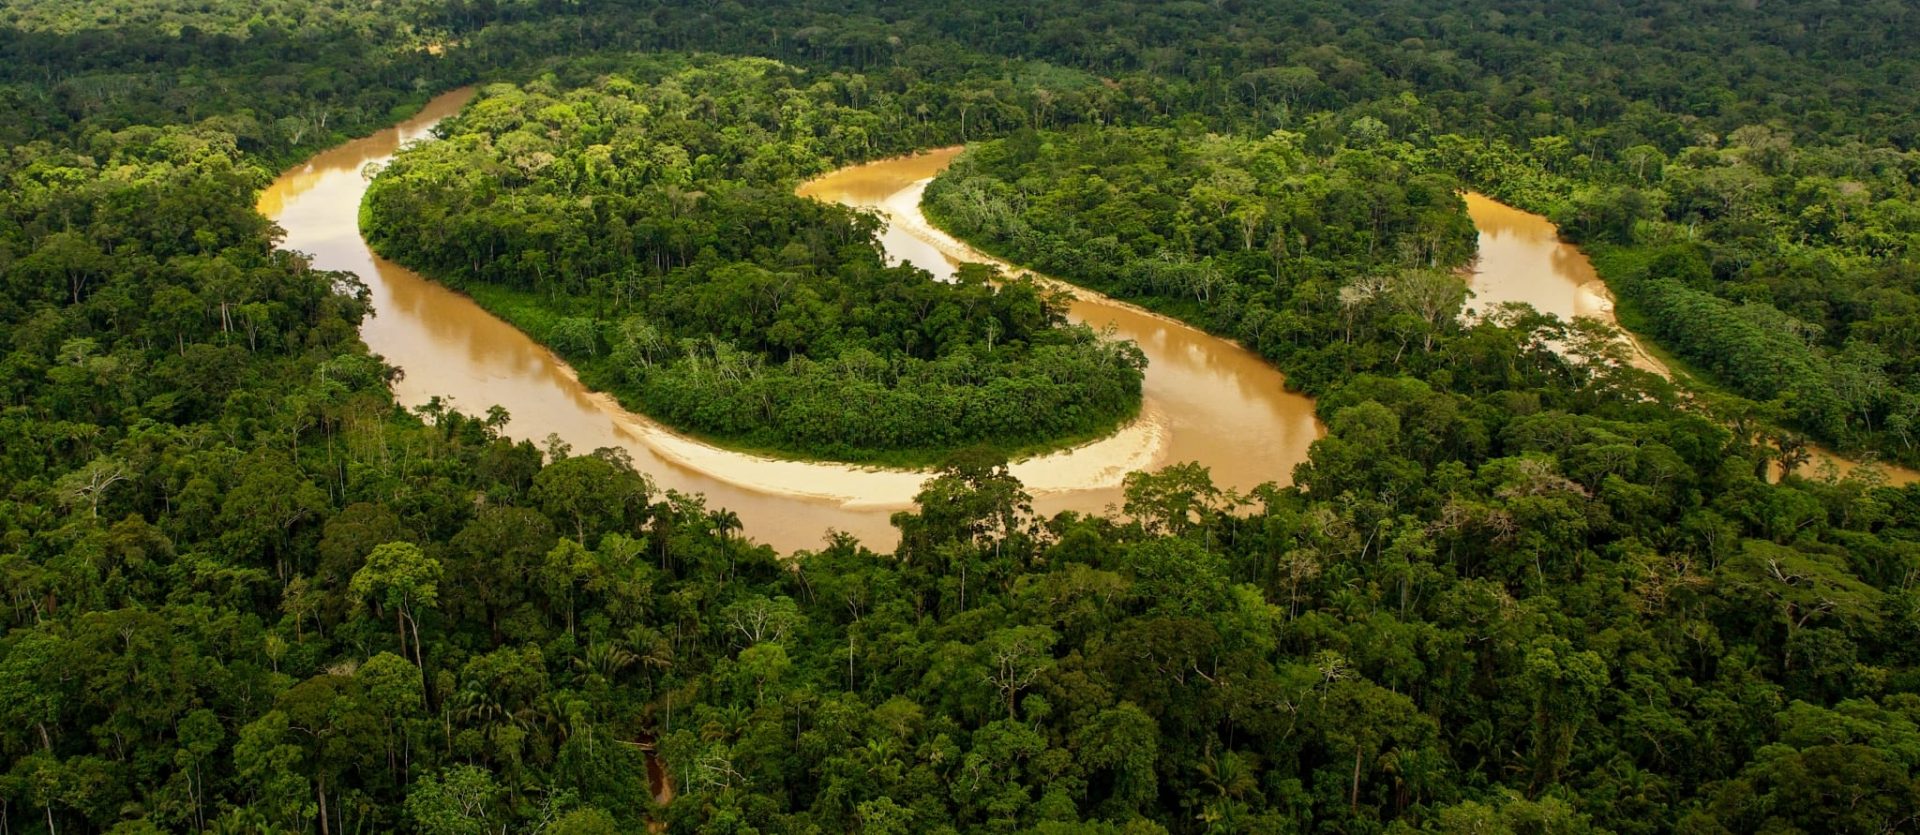 The Amazon in Peru, photo courtesy of CEDIA